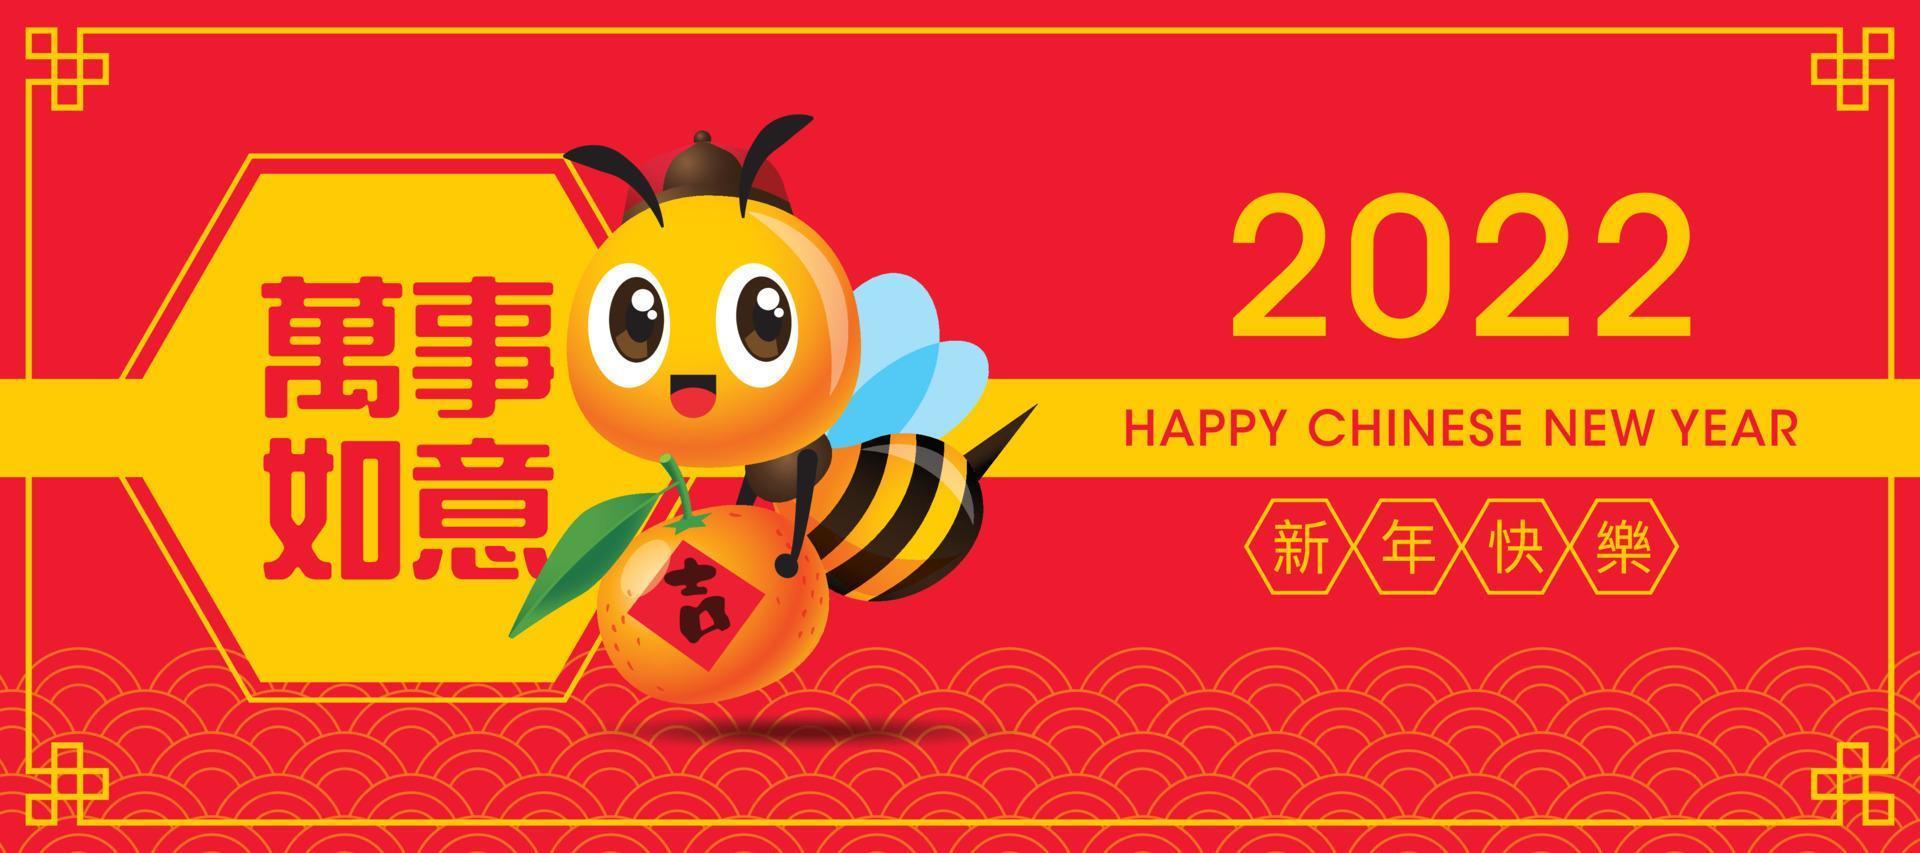 felice anno nuovo cinese 2022 banner. cartone animato carino ape che trasporta mandarino con grande distico primaverile. vettore